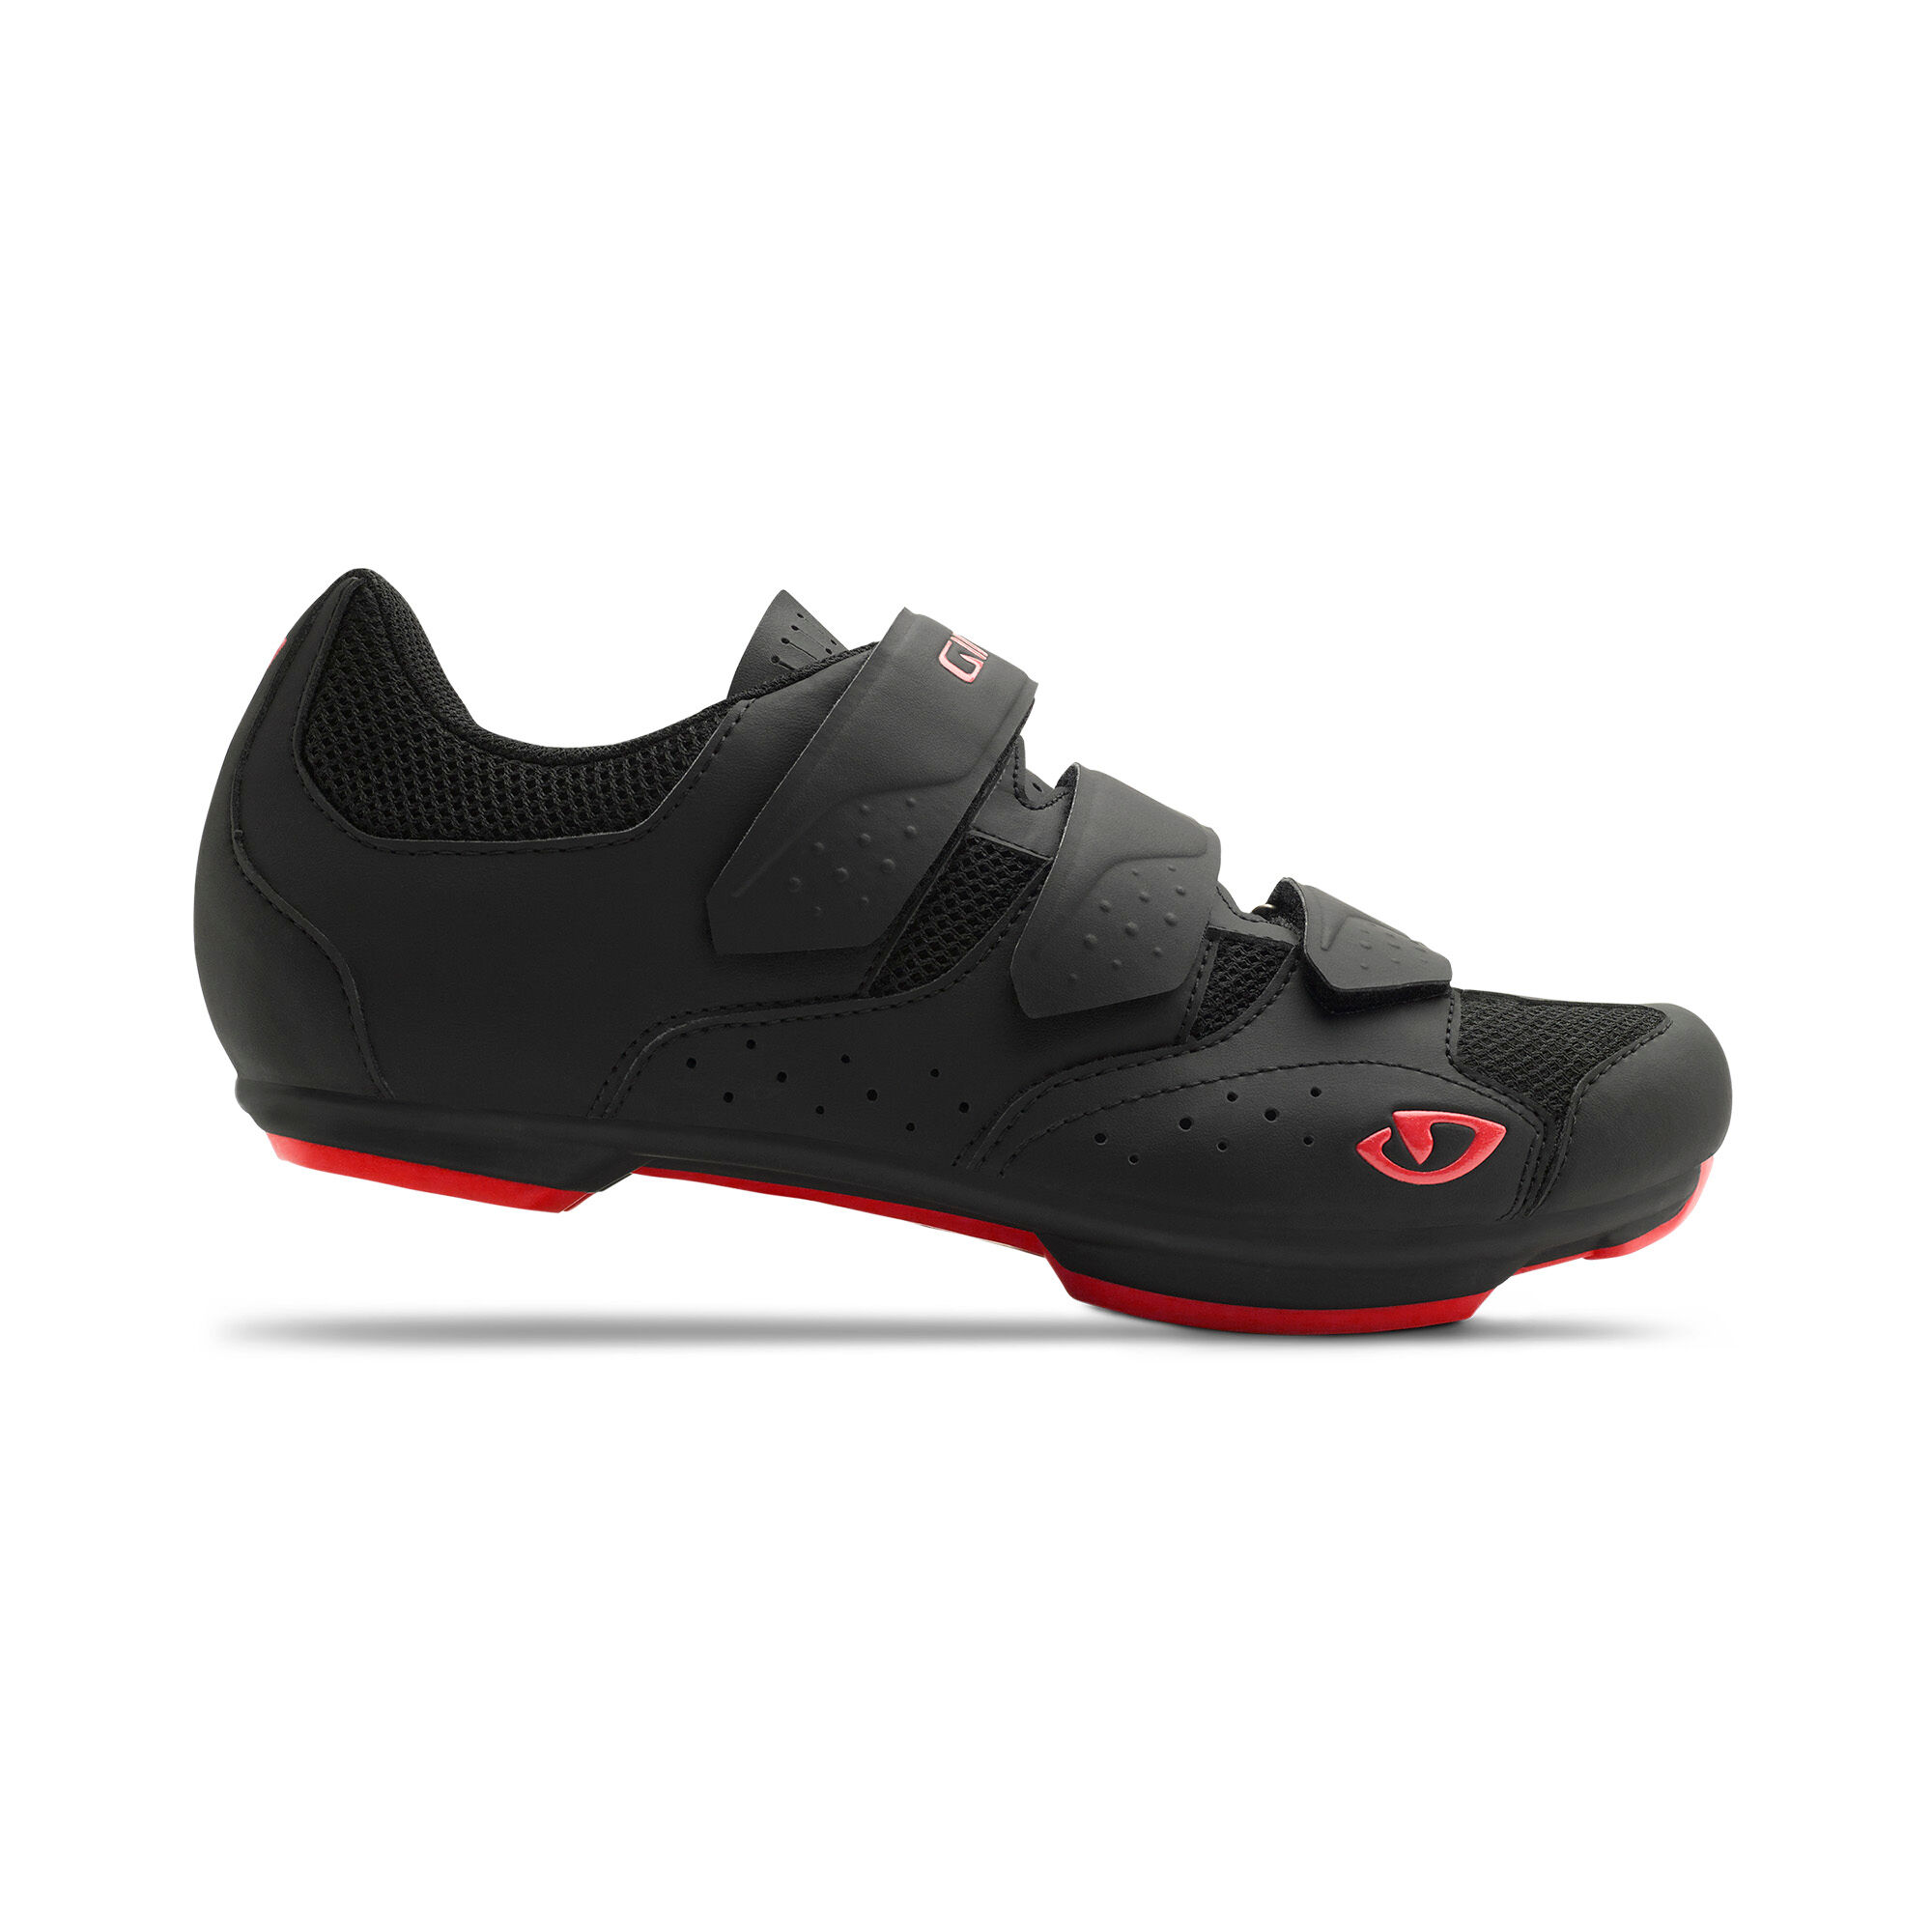 Giro Rev - Cycling shoes - Men's